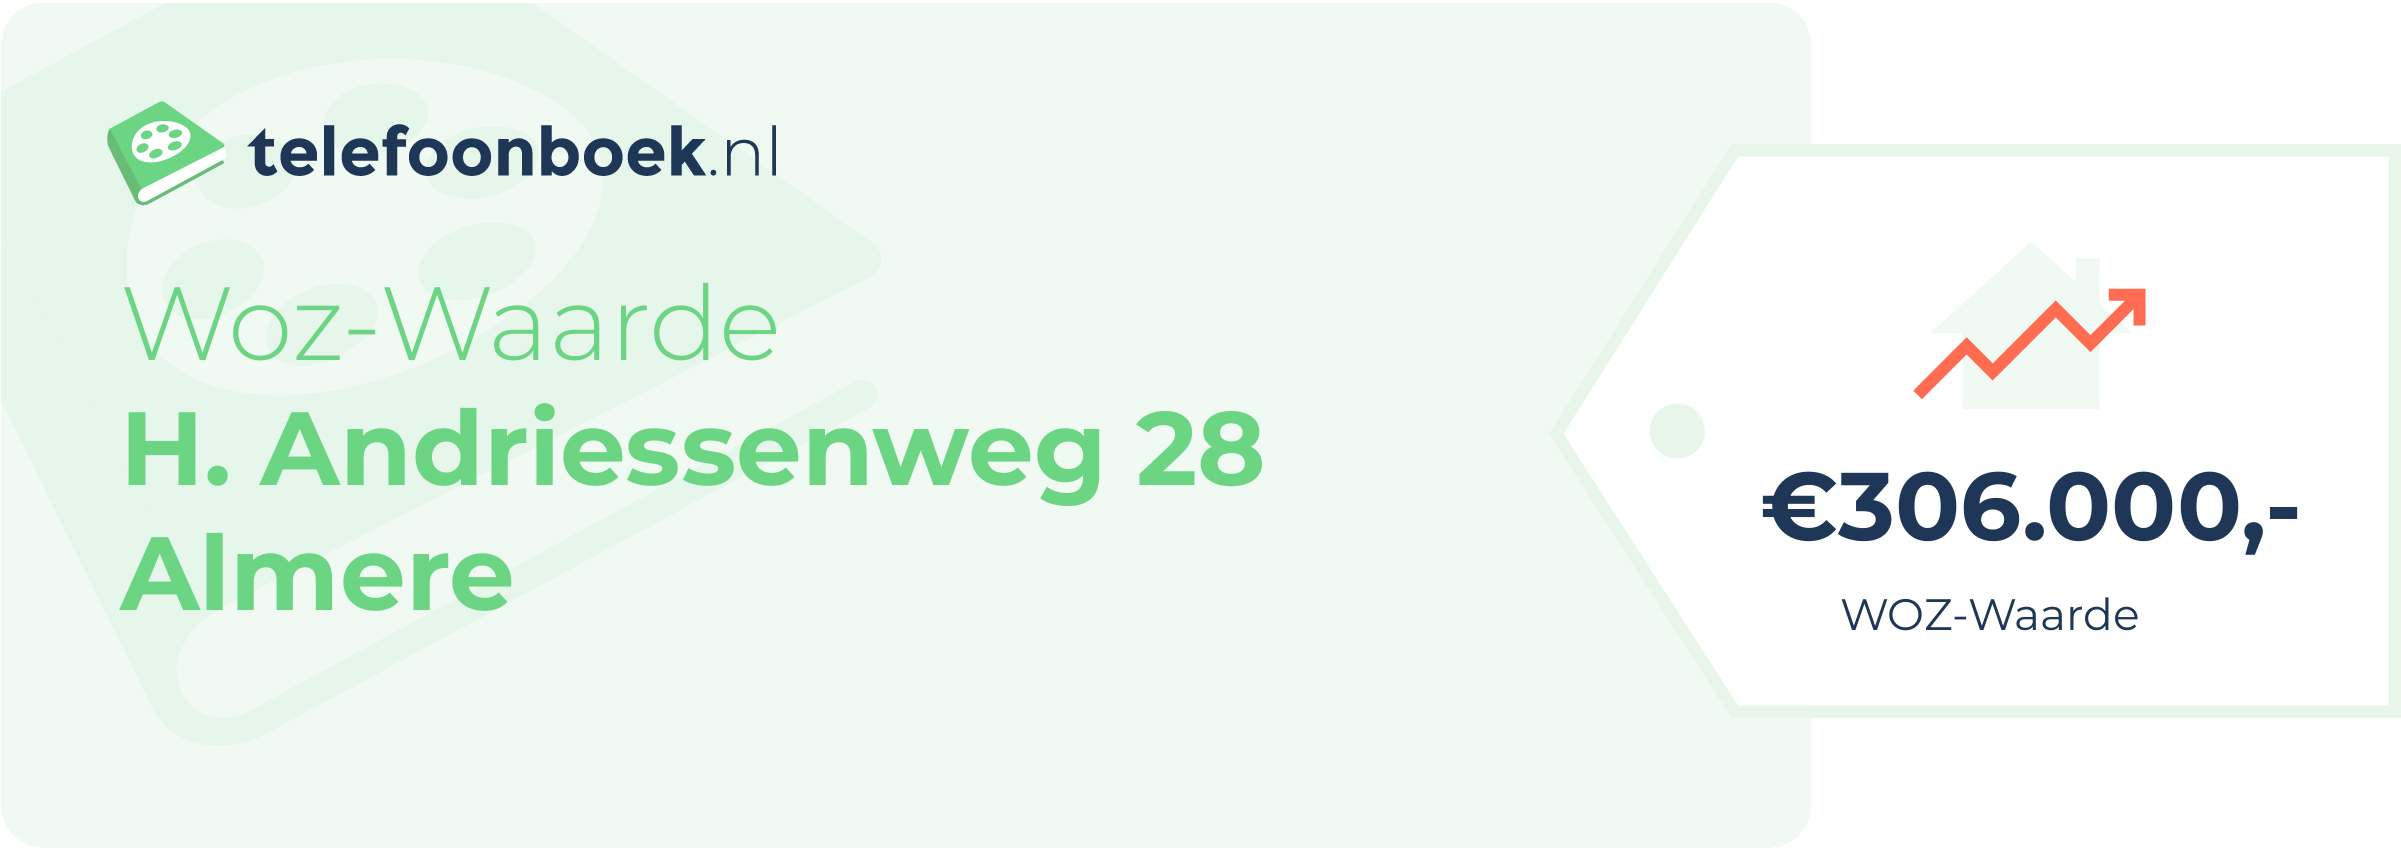 WOZ-waarde H. Andriessenweg 28 Almere